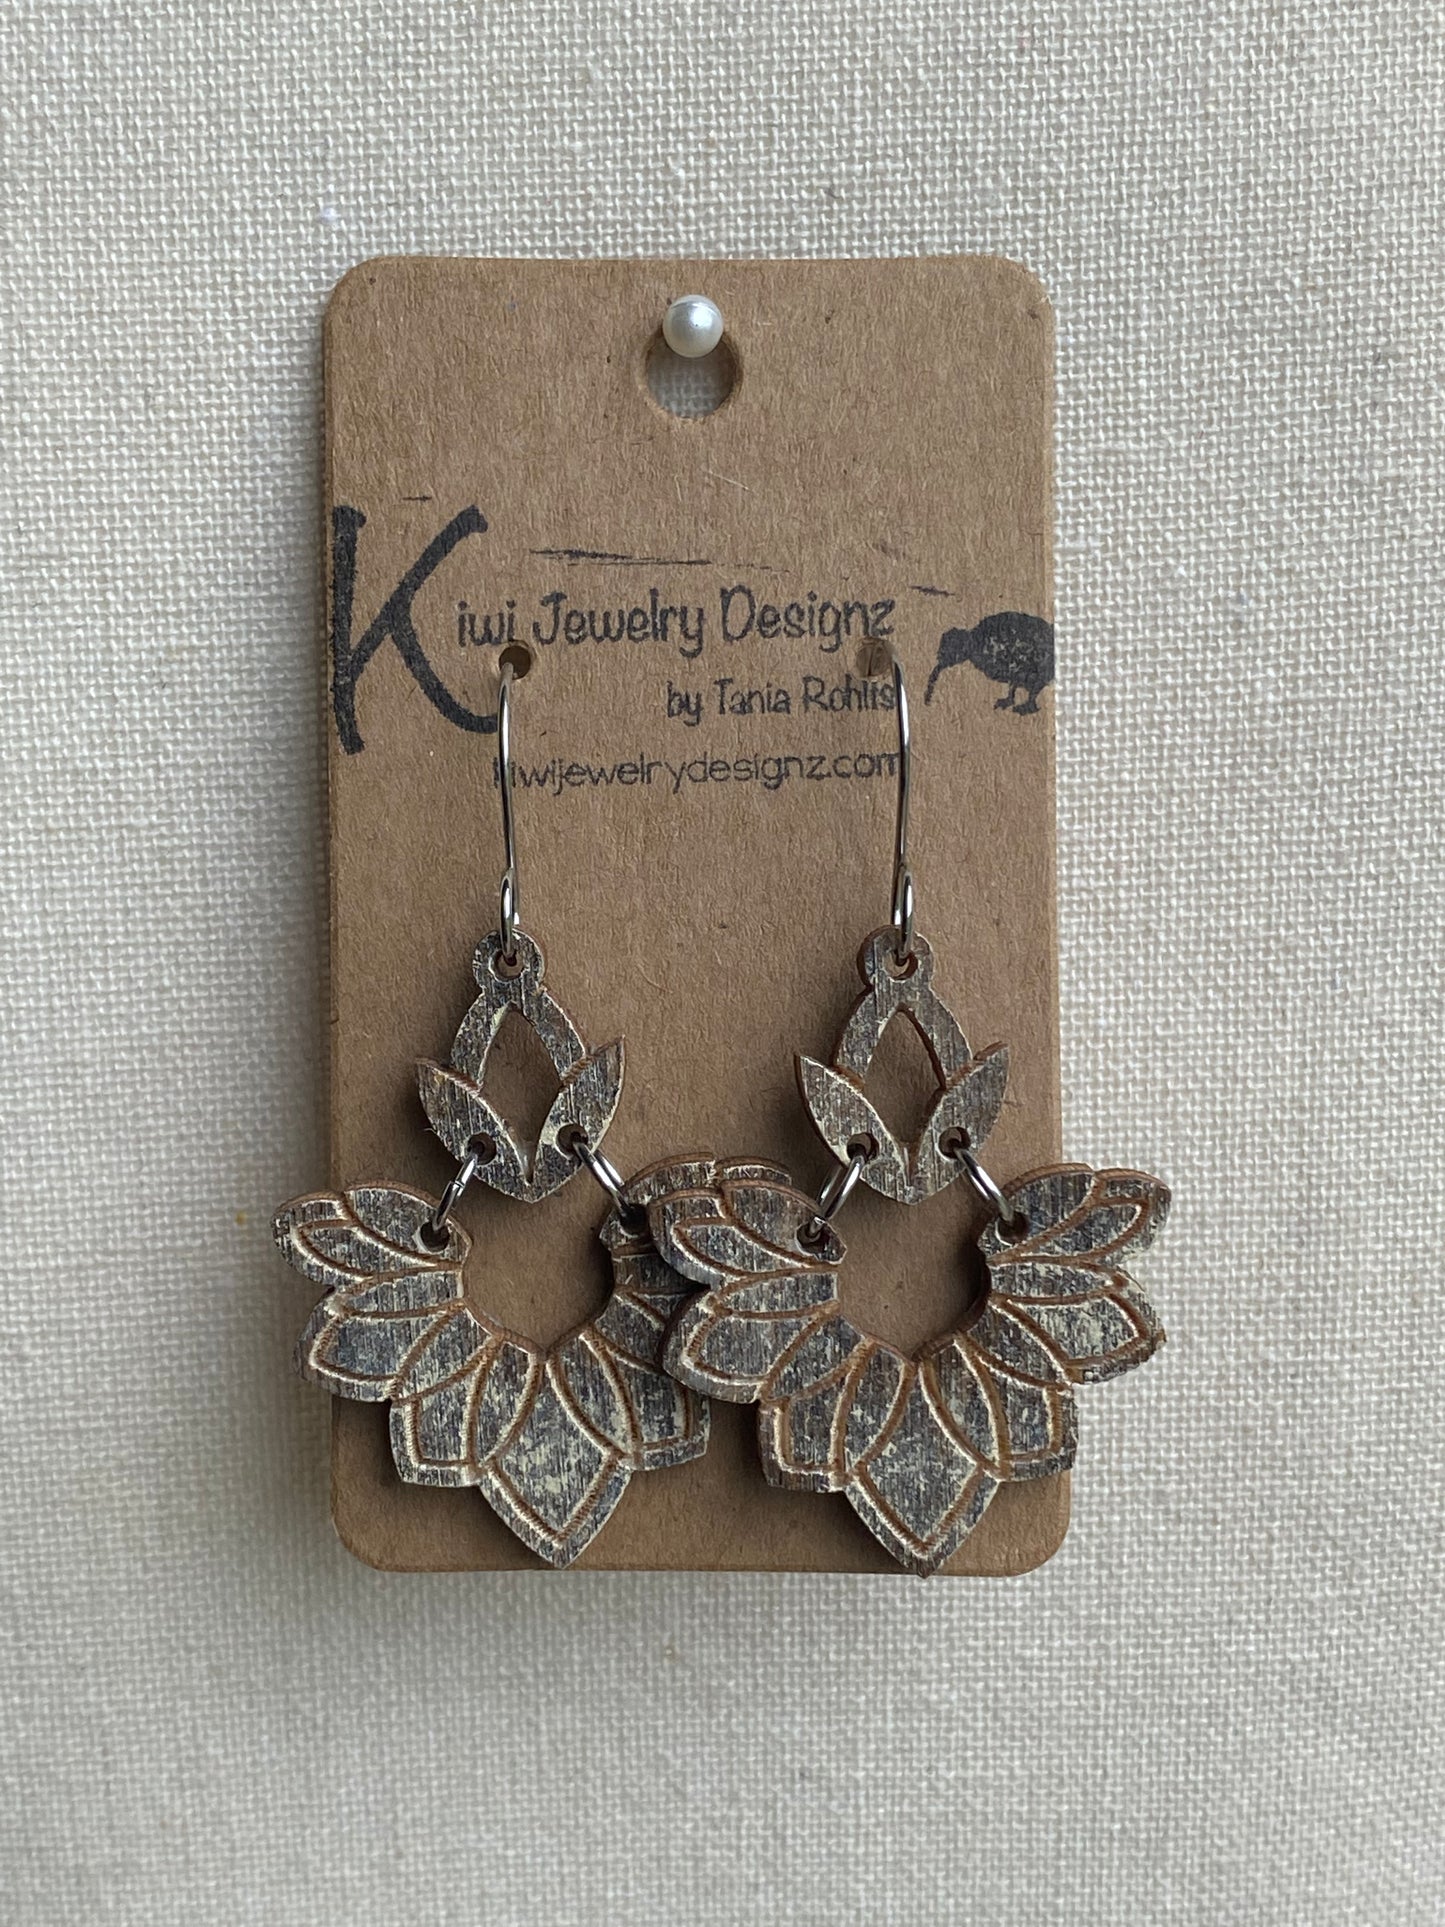 Kiwi Jewelry Designz - Wooden Earrings